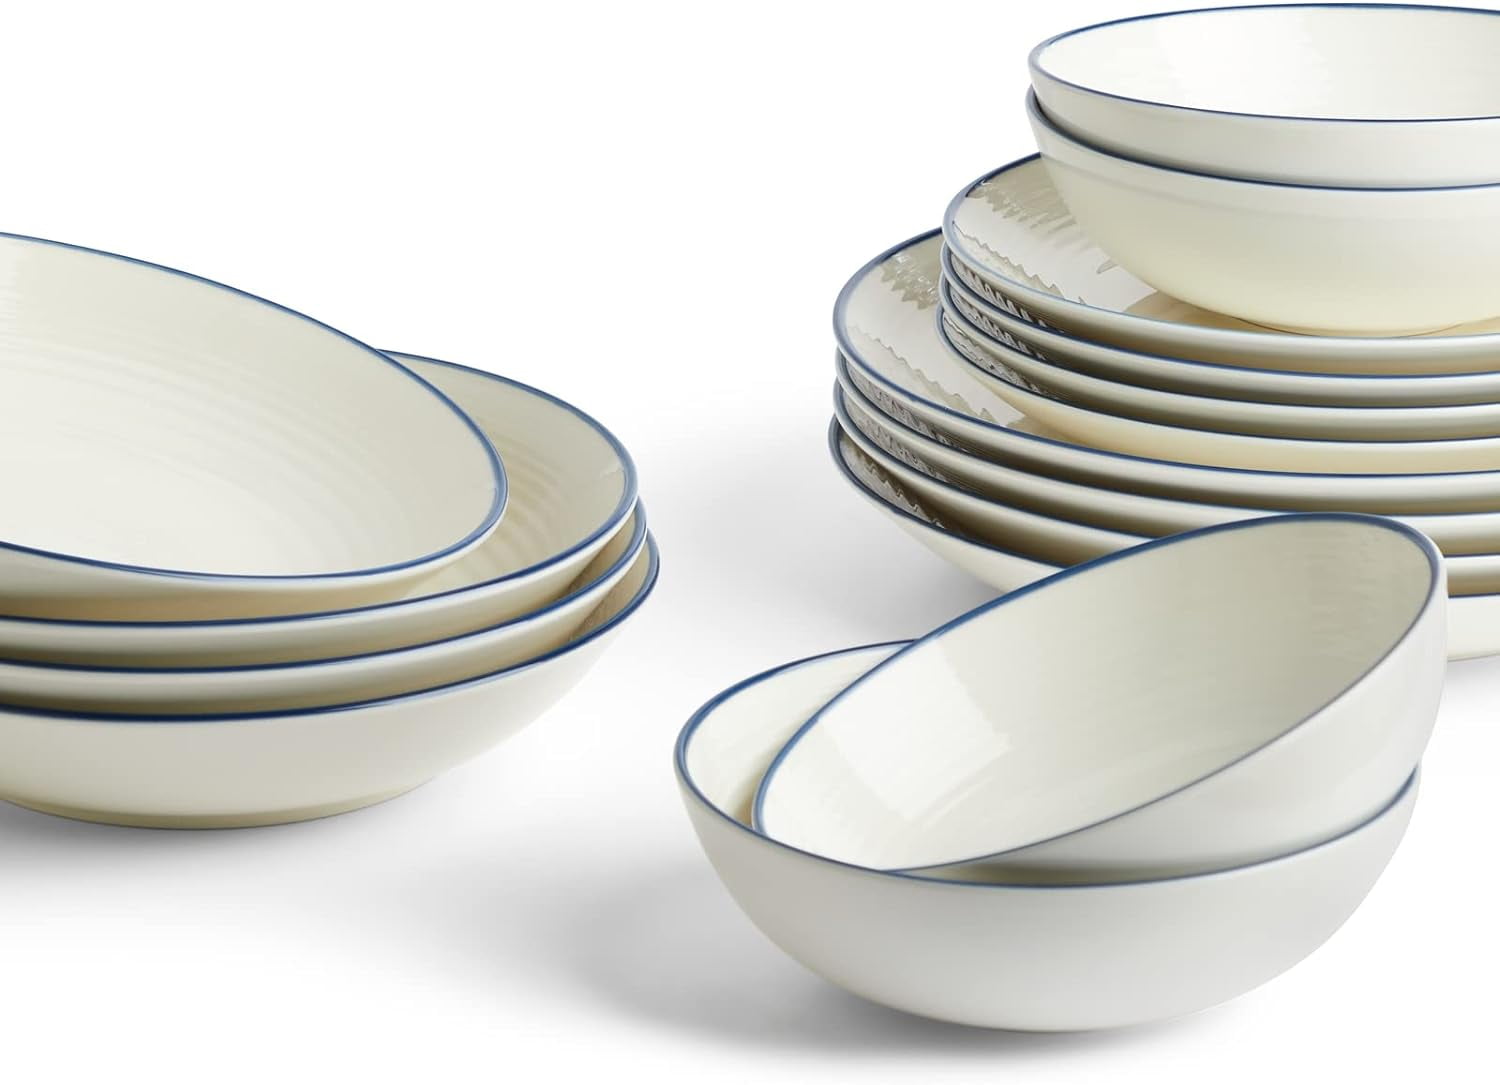 Gordon Ramsay Maze Cookware 10-Piece Set w/Glass Lids by Royal Doulton